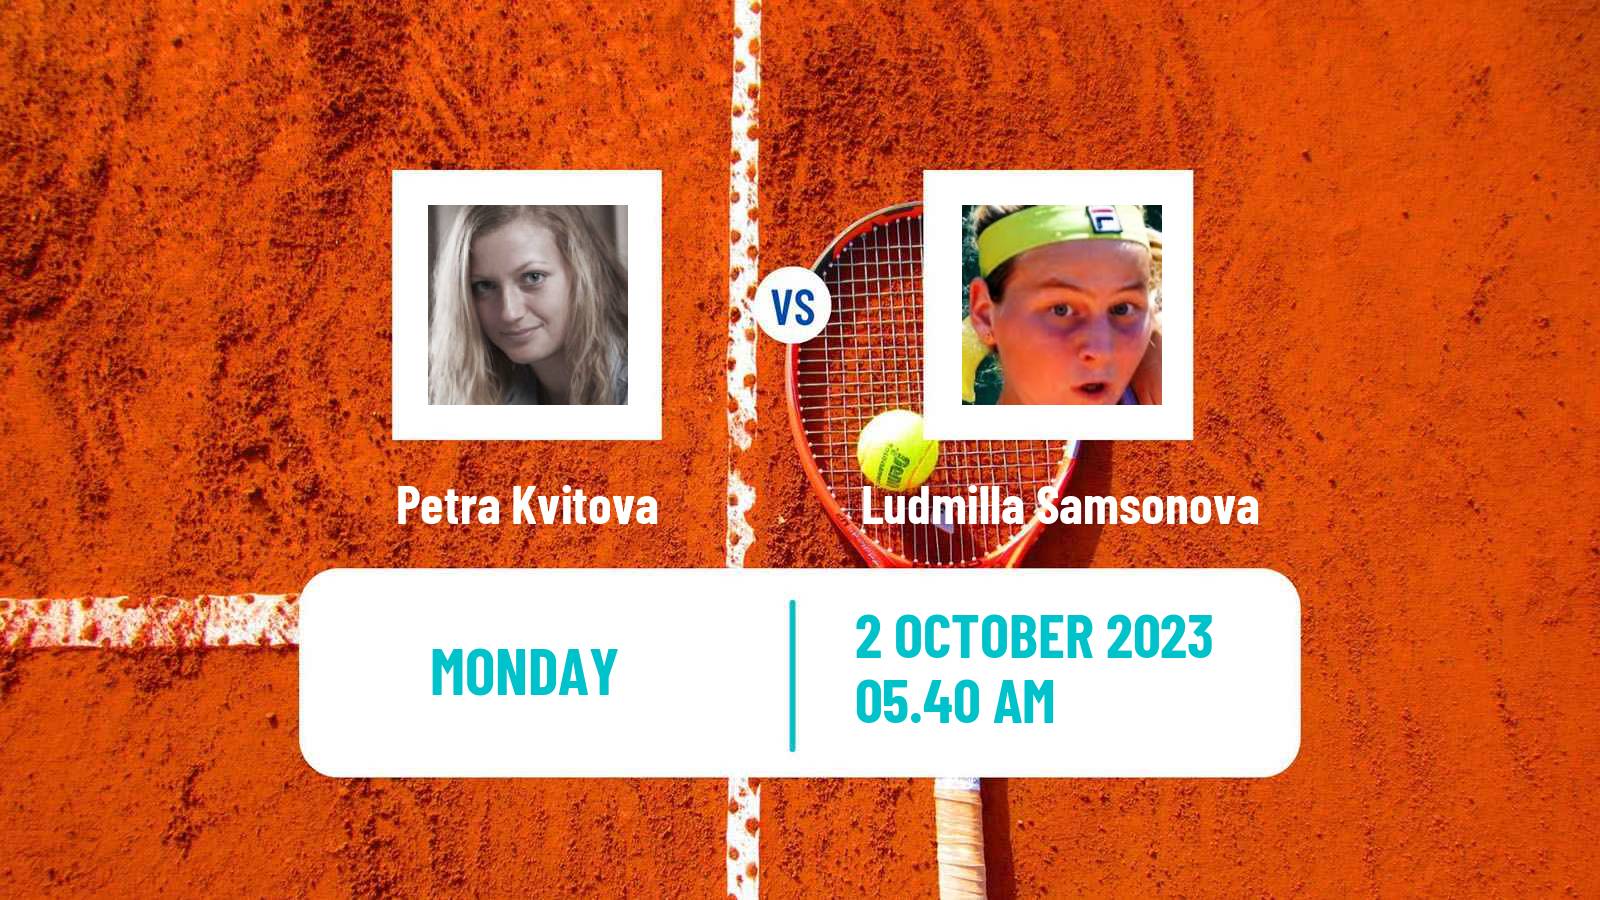 Tennis WTA Beijing Petra Kvitova - Ludmilla Samsonova